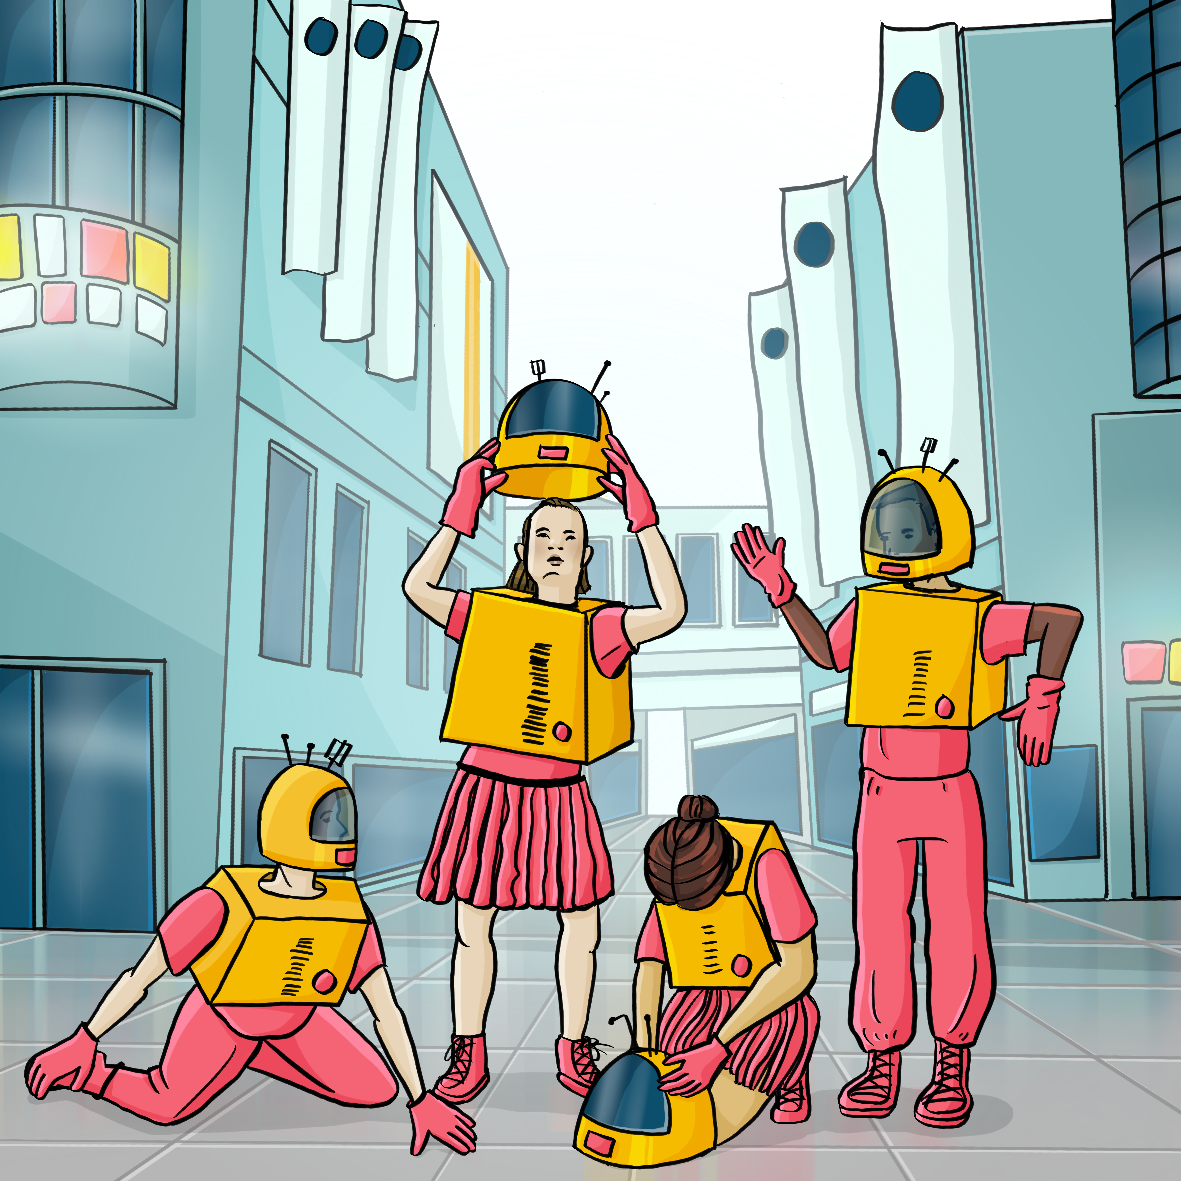 Vier Personen in Roboterkostümen. Zwei Personen stehen, zwei knien auf dem Boden. Im Hintergrund ist eine Einkaufspassage.